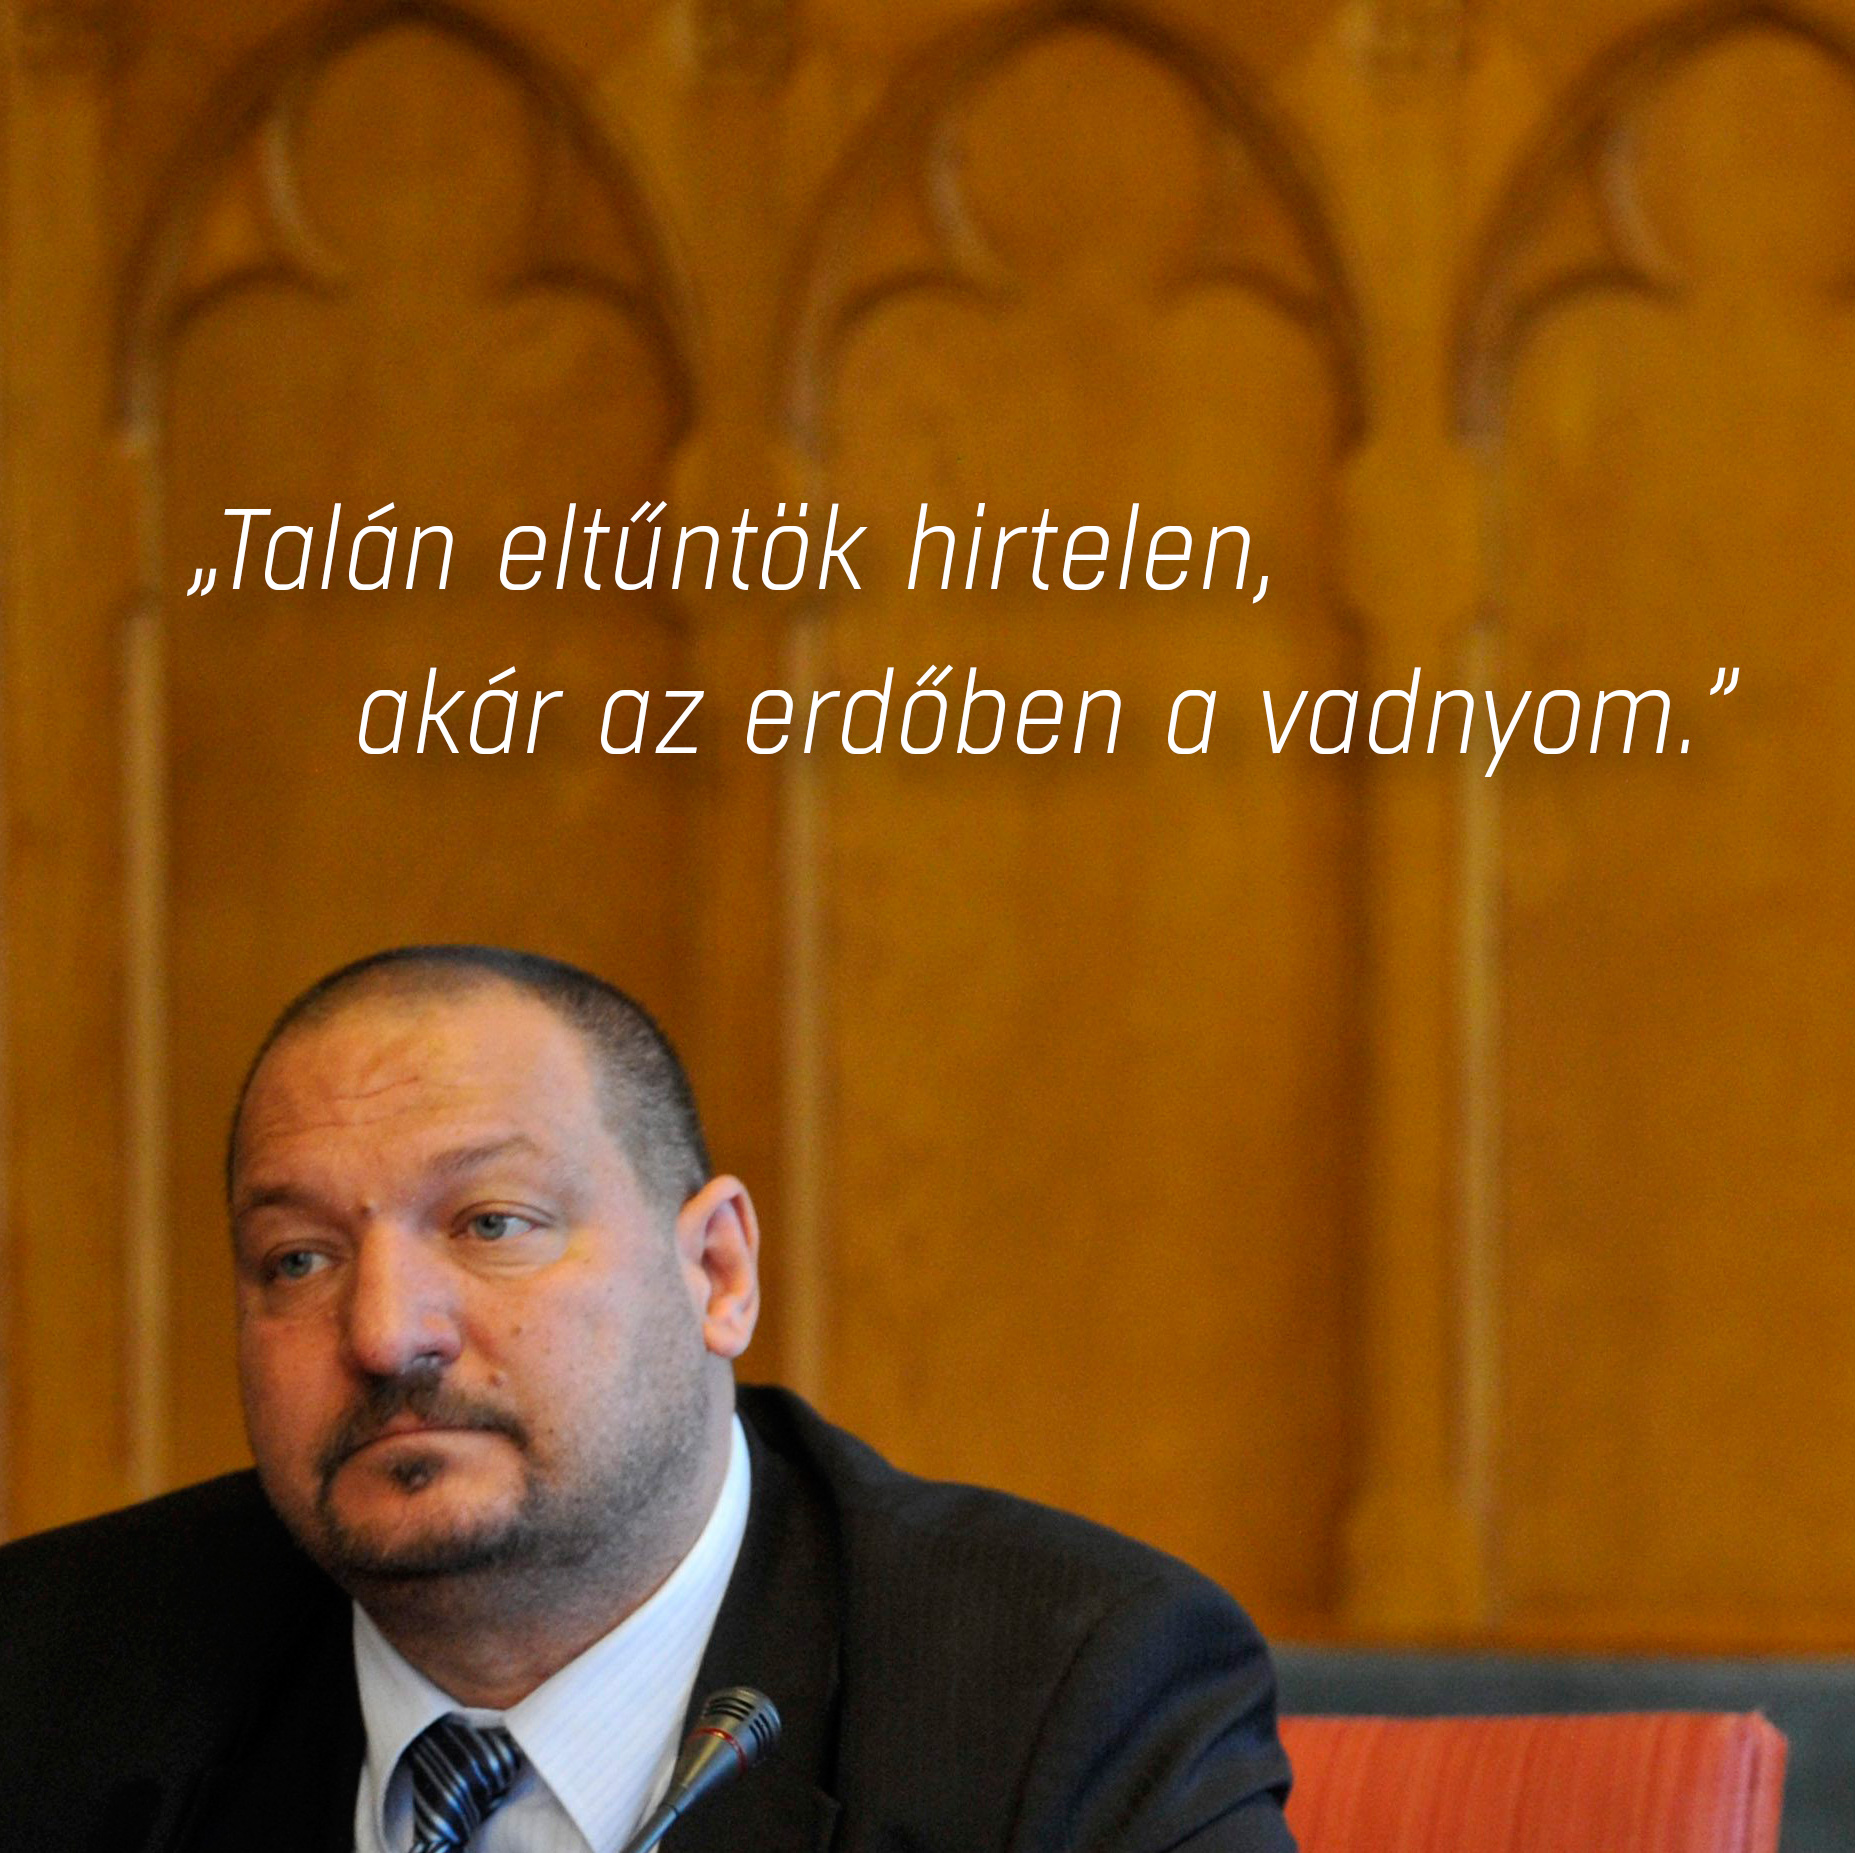 Megválasztották a Fidesz új alelnökeit, nem is értjük, miről beszélt Lázár János